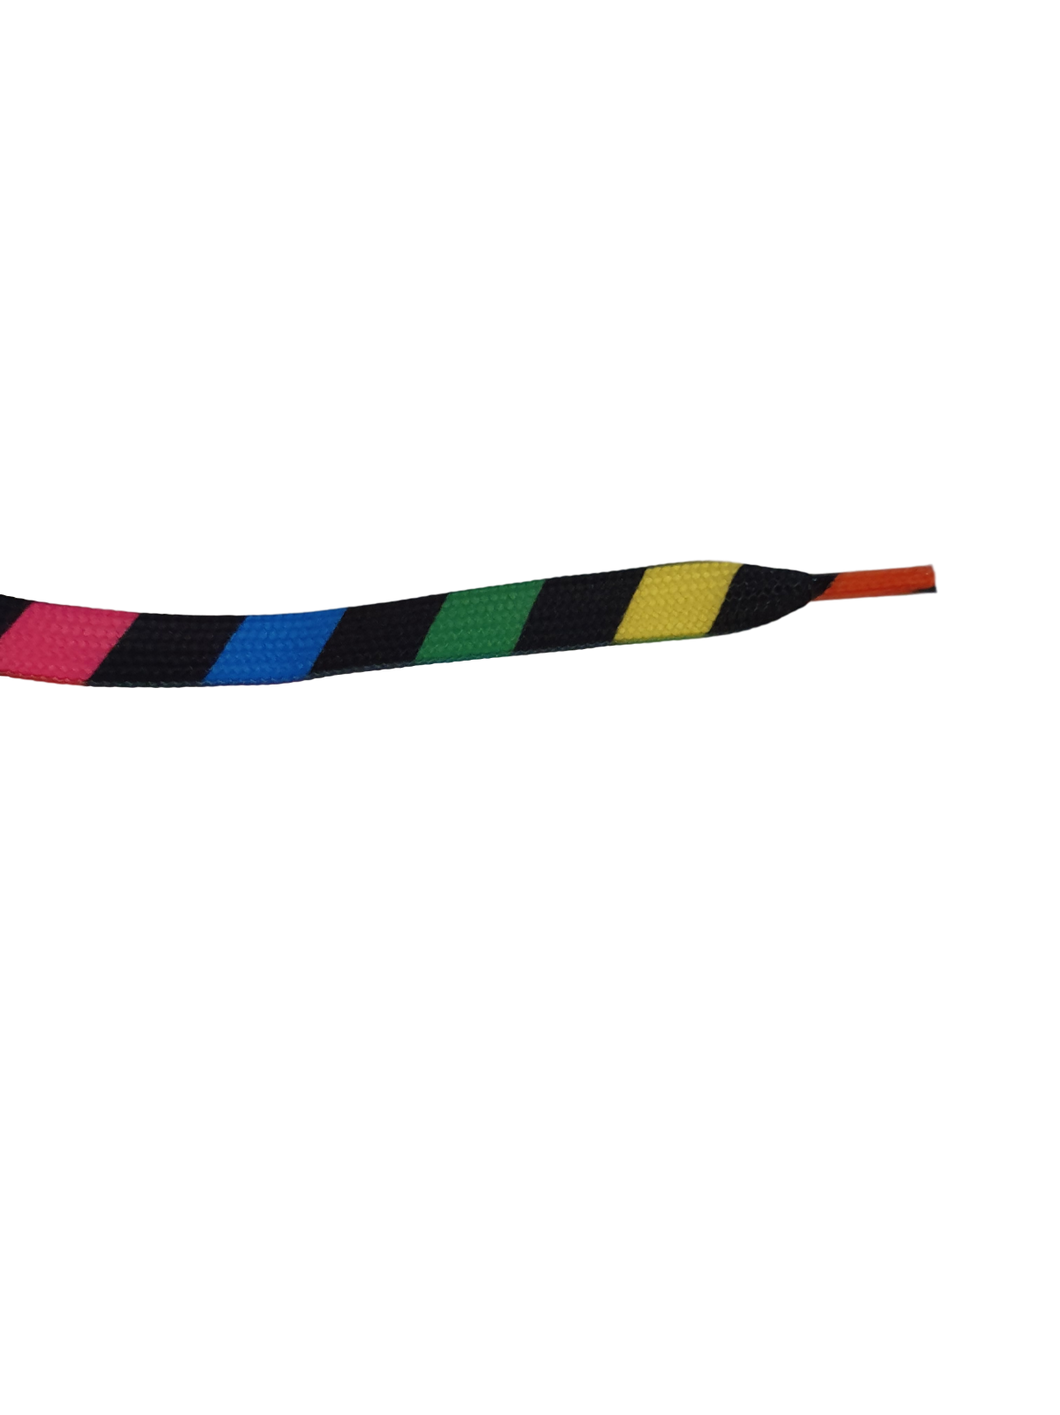 1x PAIR FLAT BLACK RAINBOW NEON STRIPES PRINT SHOE SNEAKER TRAINER LACES 115cm